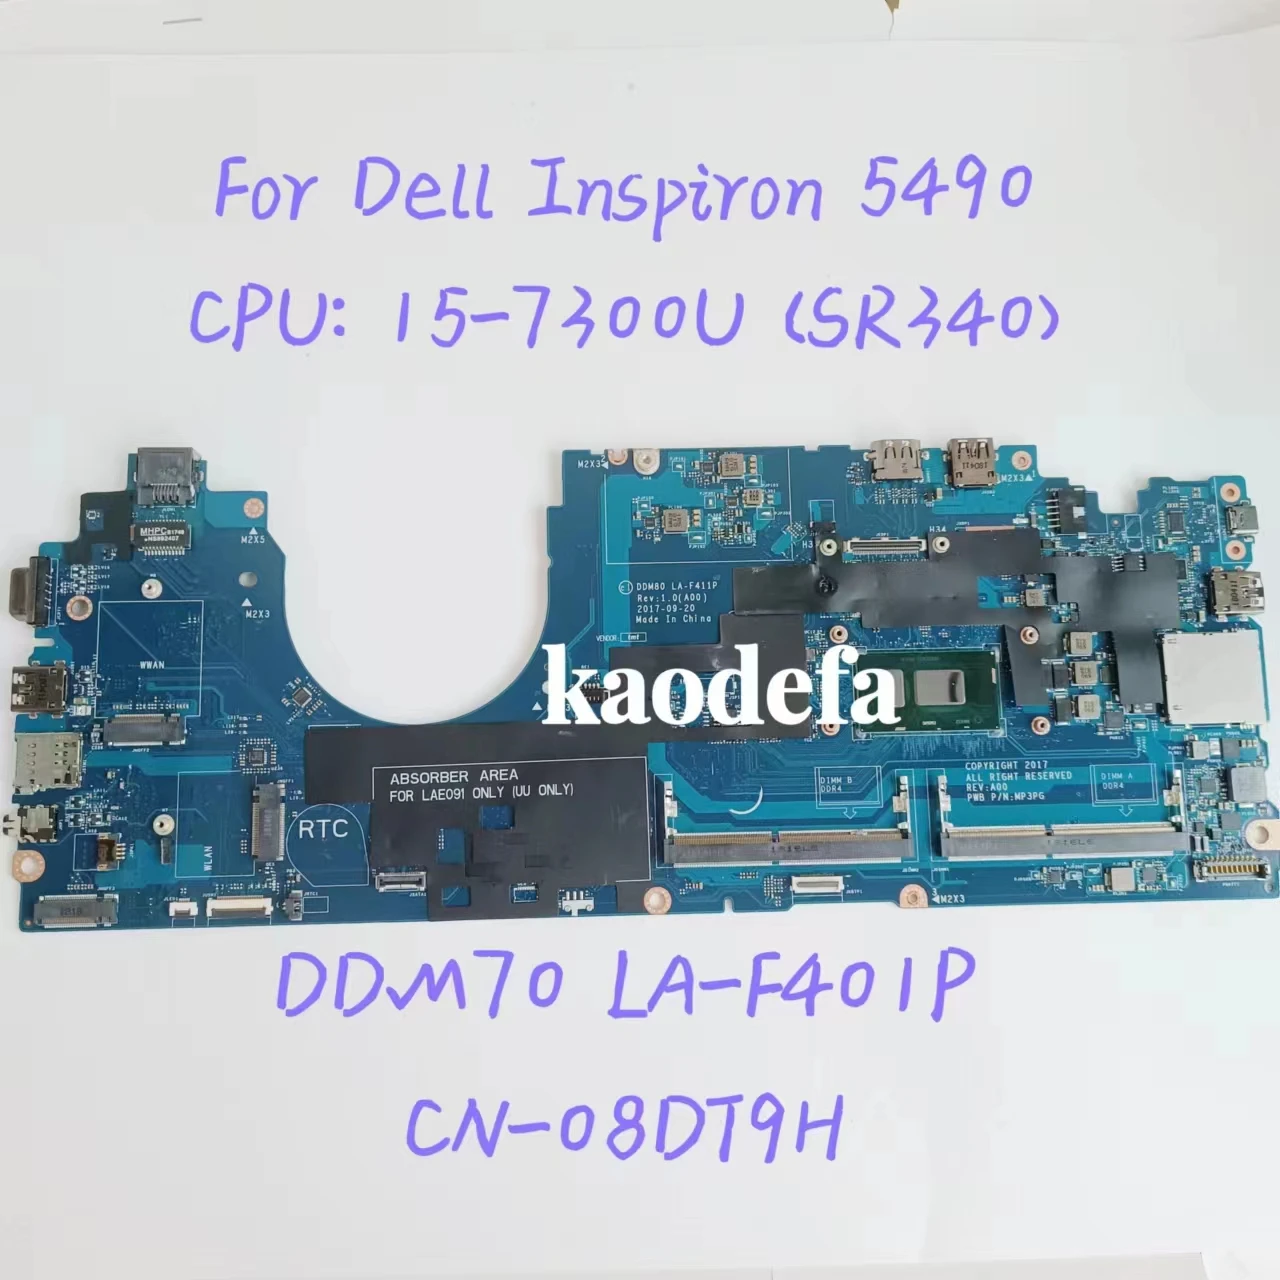 

DDM70 LA-F401P Mainboard For Dell Inspiron 5490 Laptop Motherboard CPU:I5-7300U SR340 DDR4 CN-08DT9H 08DT9H 8DT9H 100% Test OK